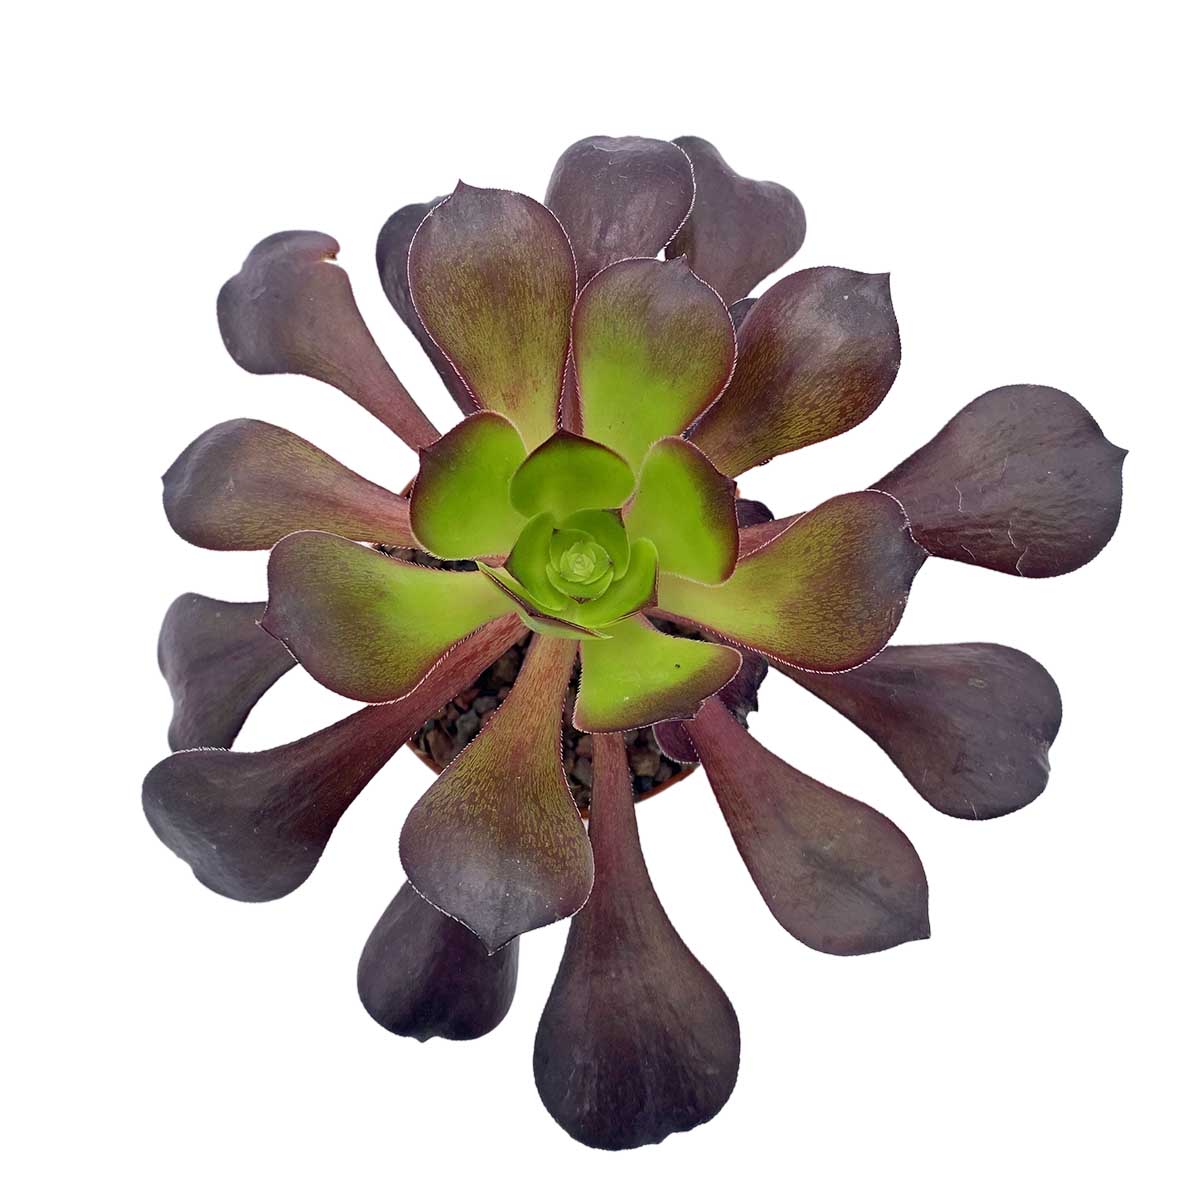 https://bo.cactijardins.com/FileUploads/produtos/as-nossas-plantas/aeonium/cactijardins_aeonium_deep_purple_ref3540.jpg